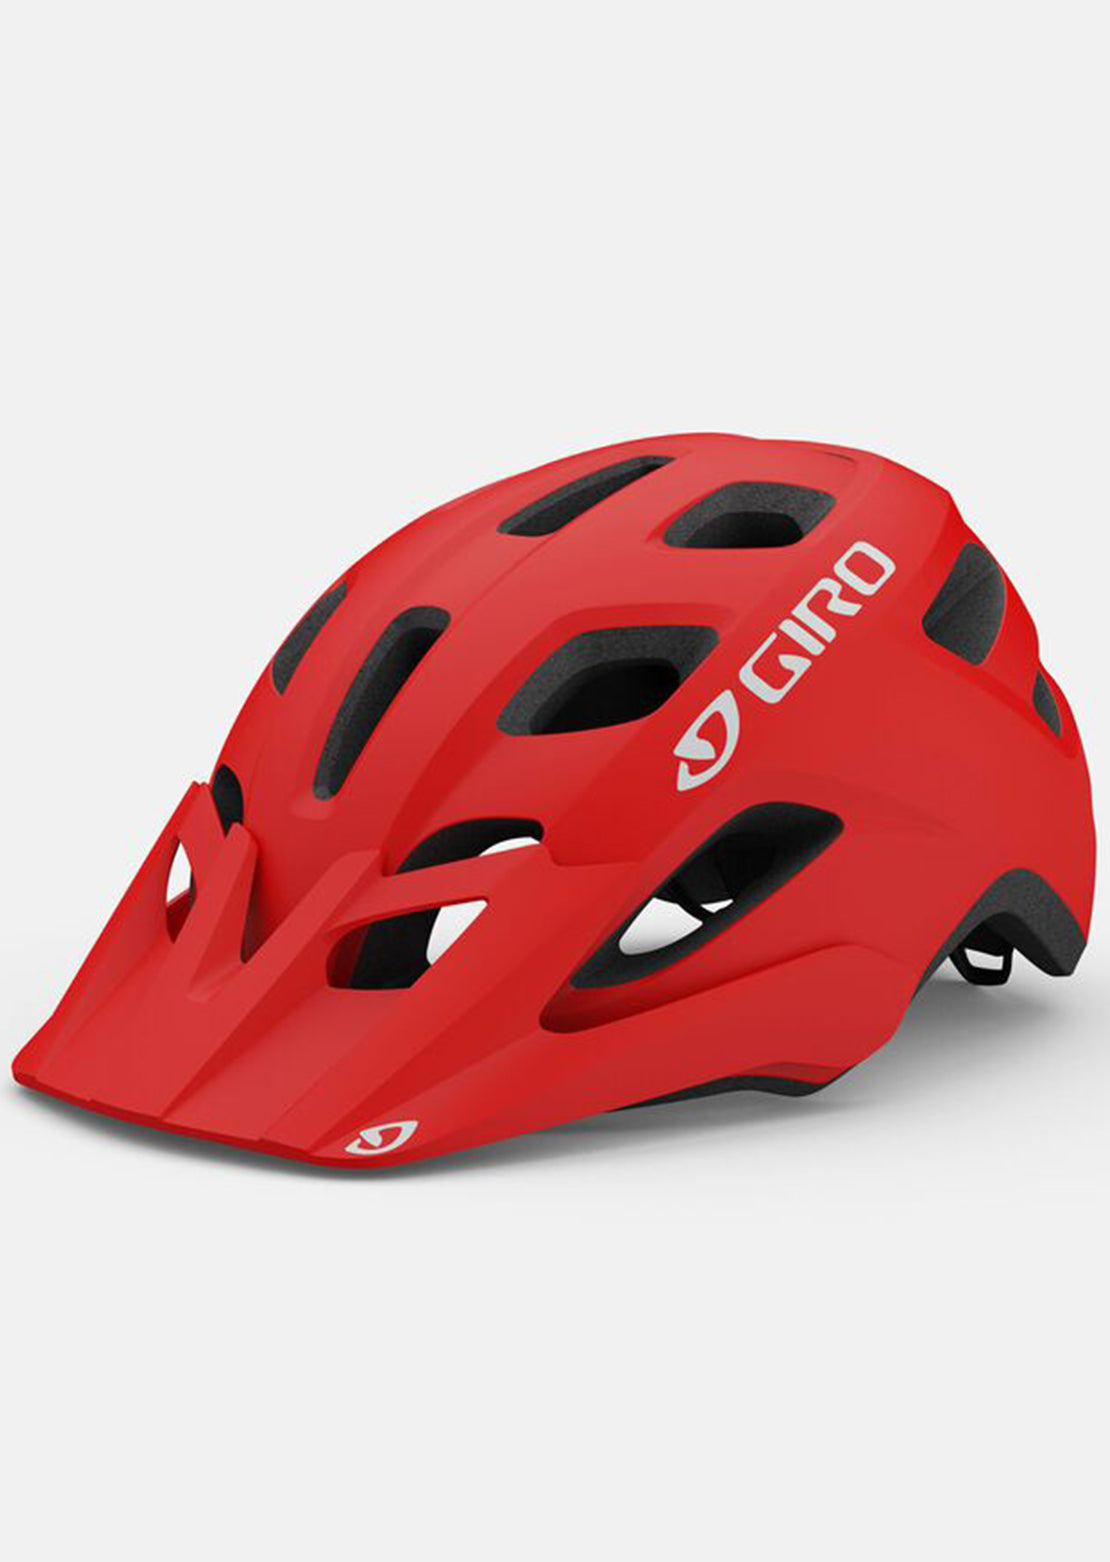 Giro Men's Fixture Mips Mountain Bike Helmet